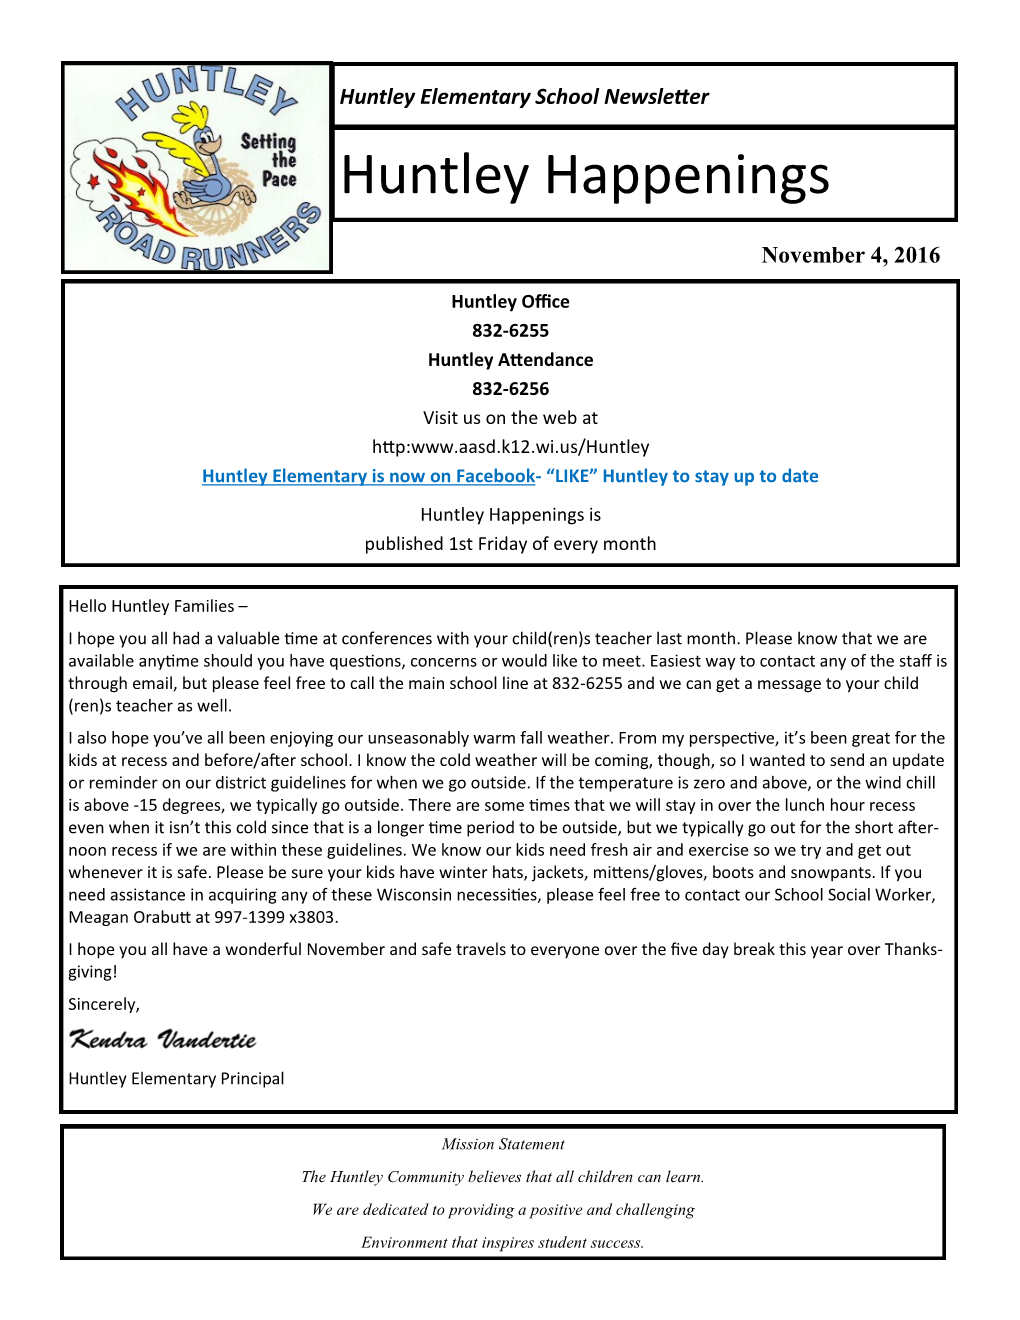 Huntley Happenings